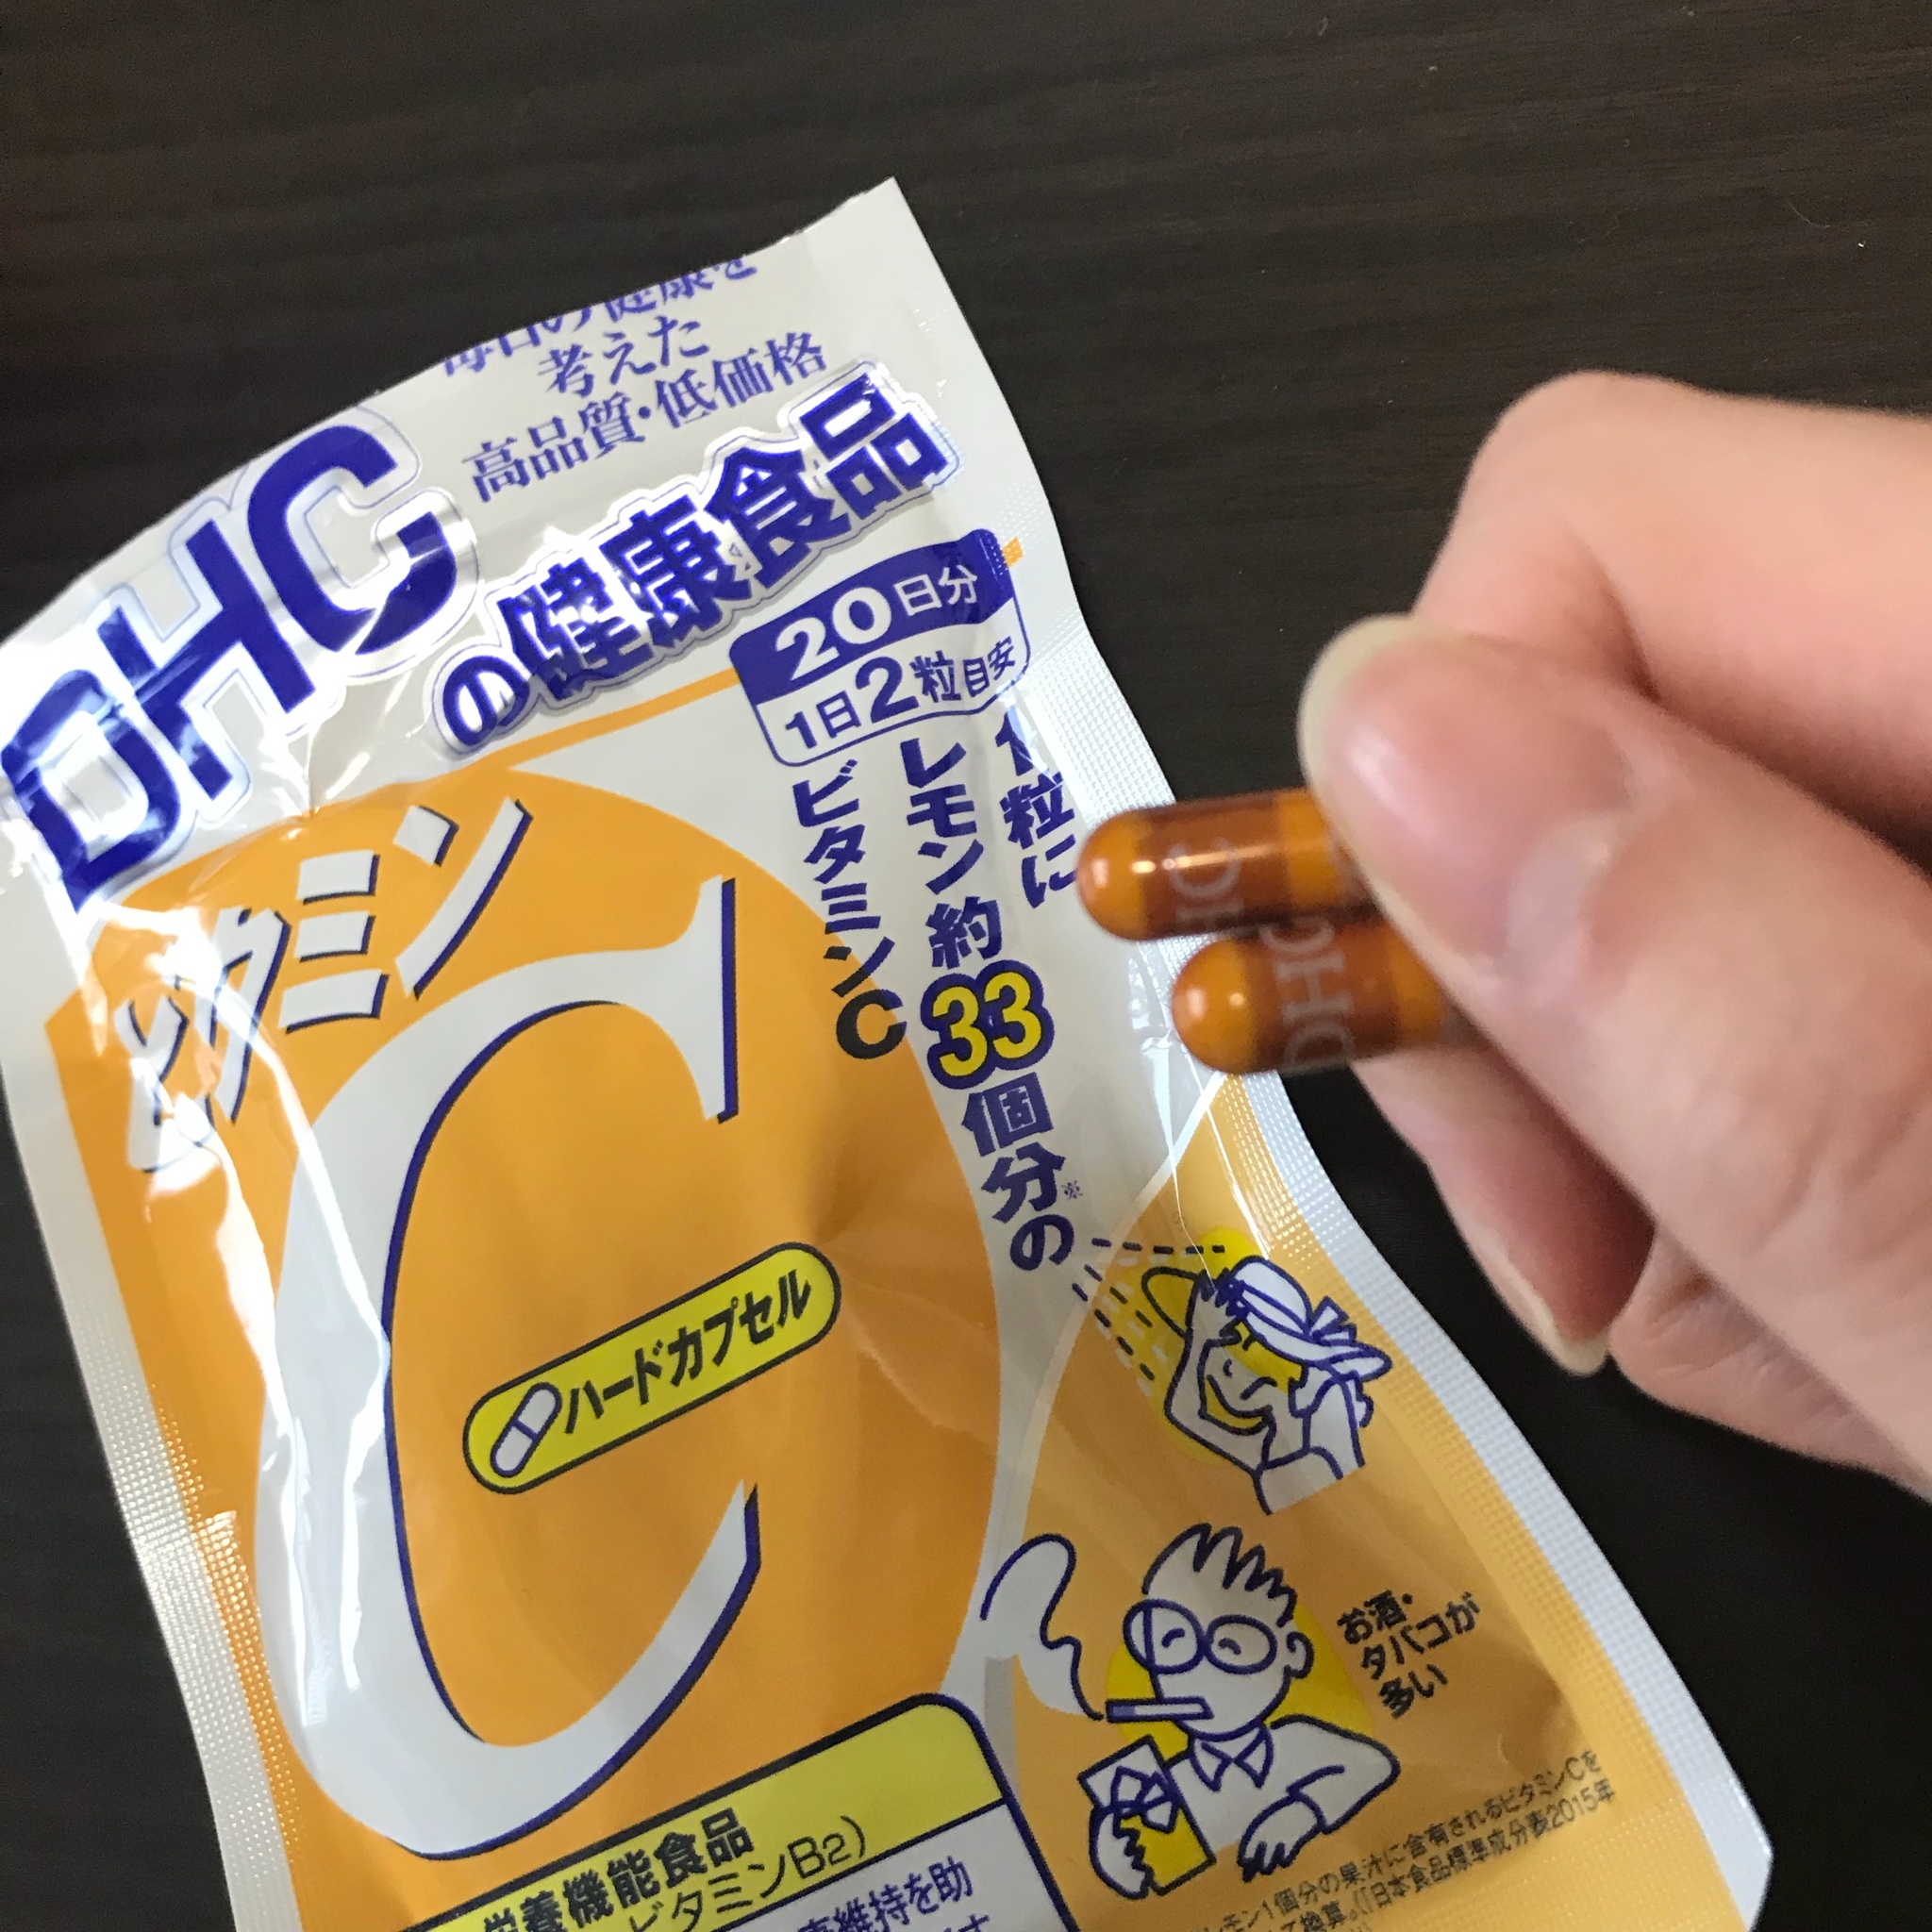 Dhc ビタミンc ハードカプセル の口コミ写真 By Kiku さん 1枚目 美容 化粧品情報はアットコスメ